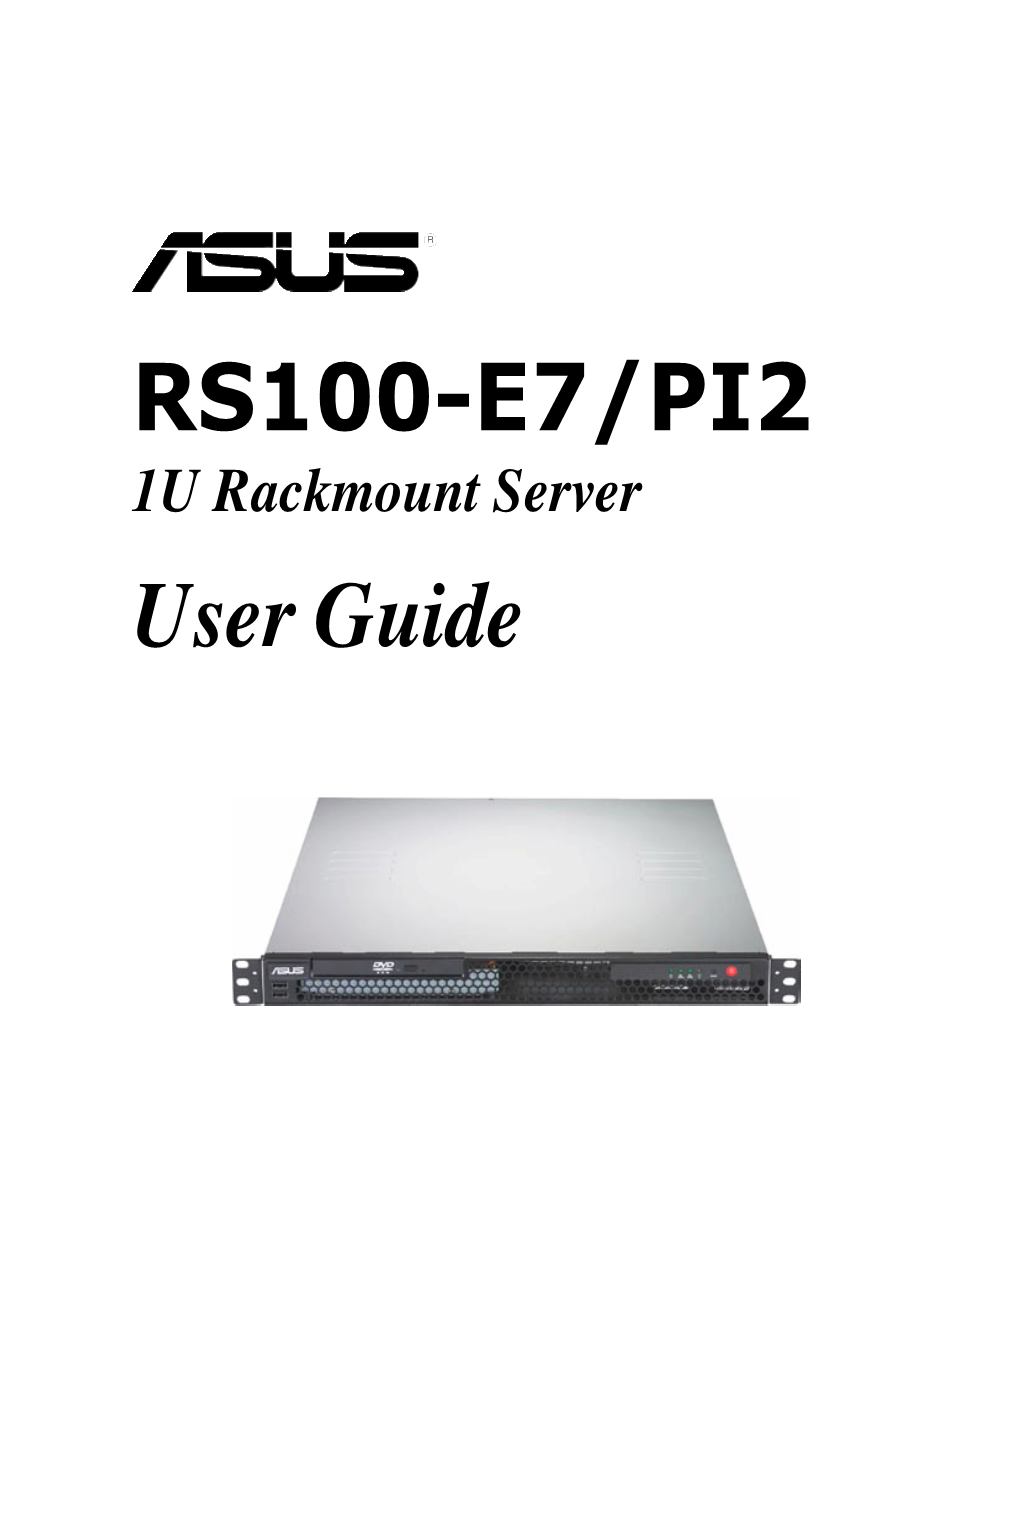 RS100-E7/PI2 User Guide